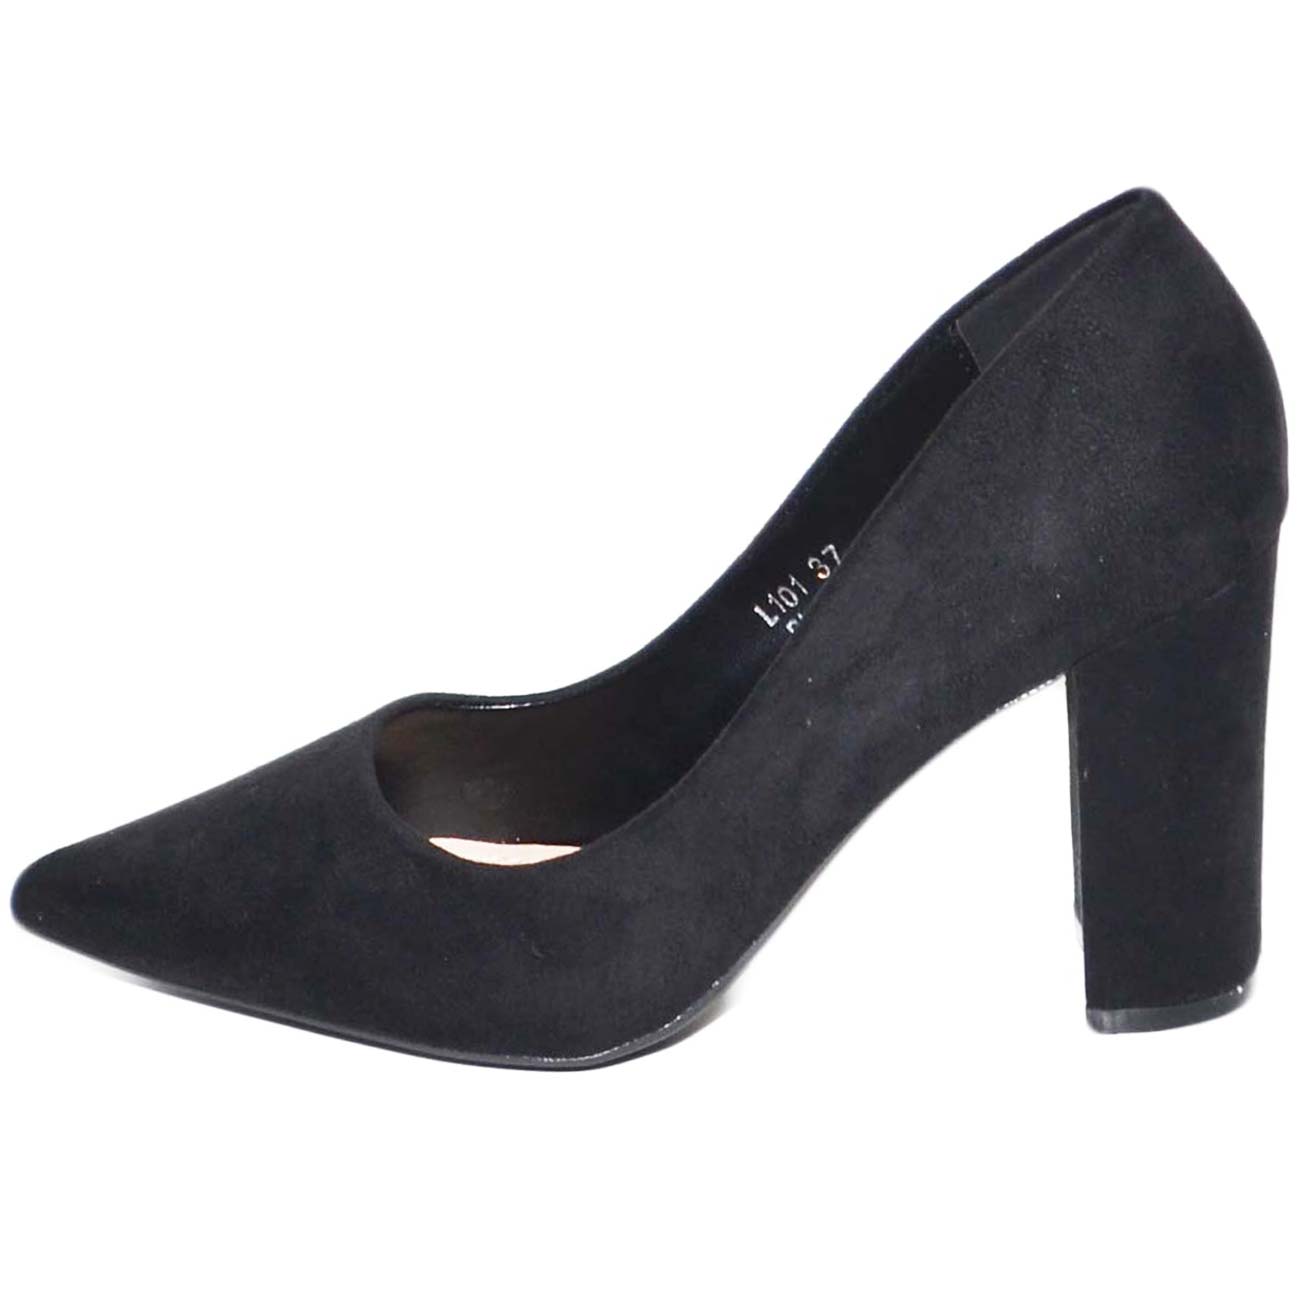 Decollete donna nero a punta in camoscio con tacco basso largo comodo 7 cm  moda anni 30 tendenza donna d�collet� Malu shoes | MaluShoes